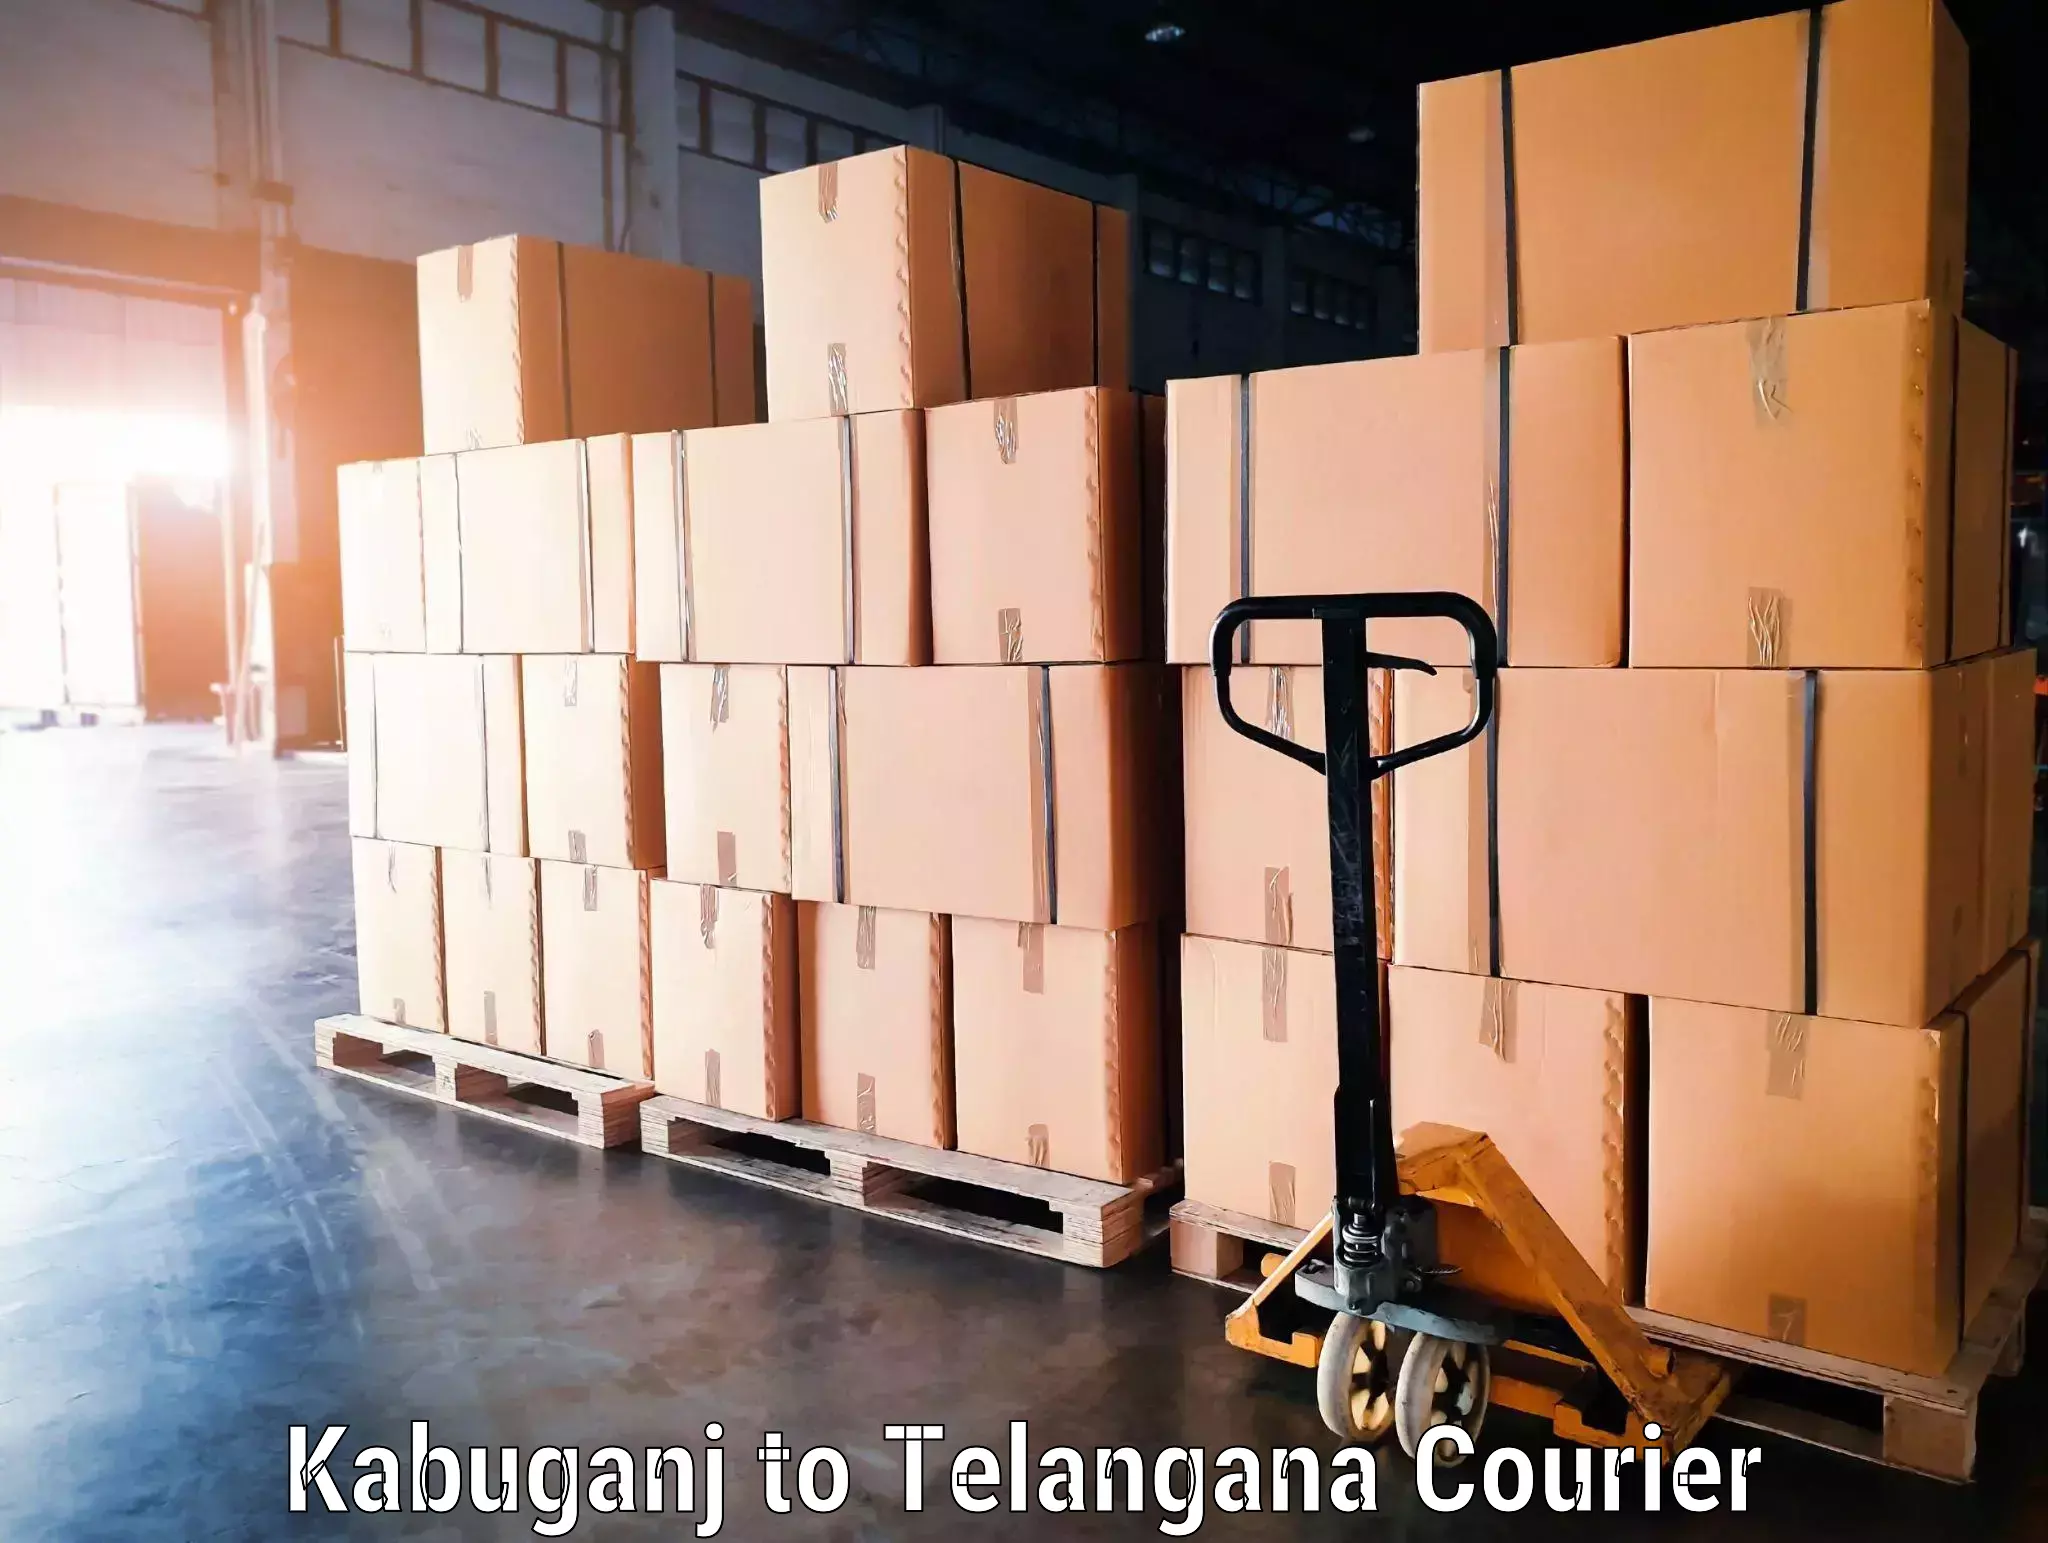 Airport luggage delivery Kabuganj to Rayaparthi